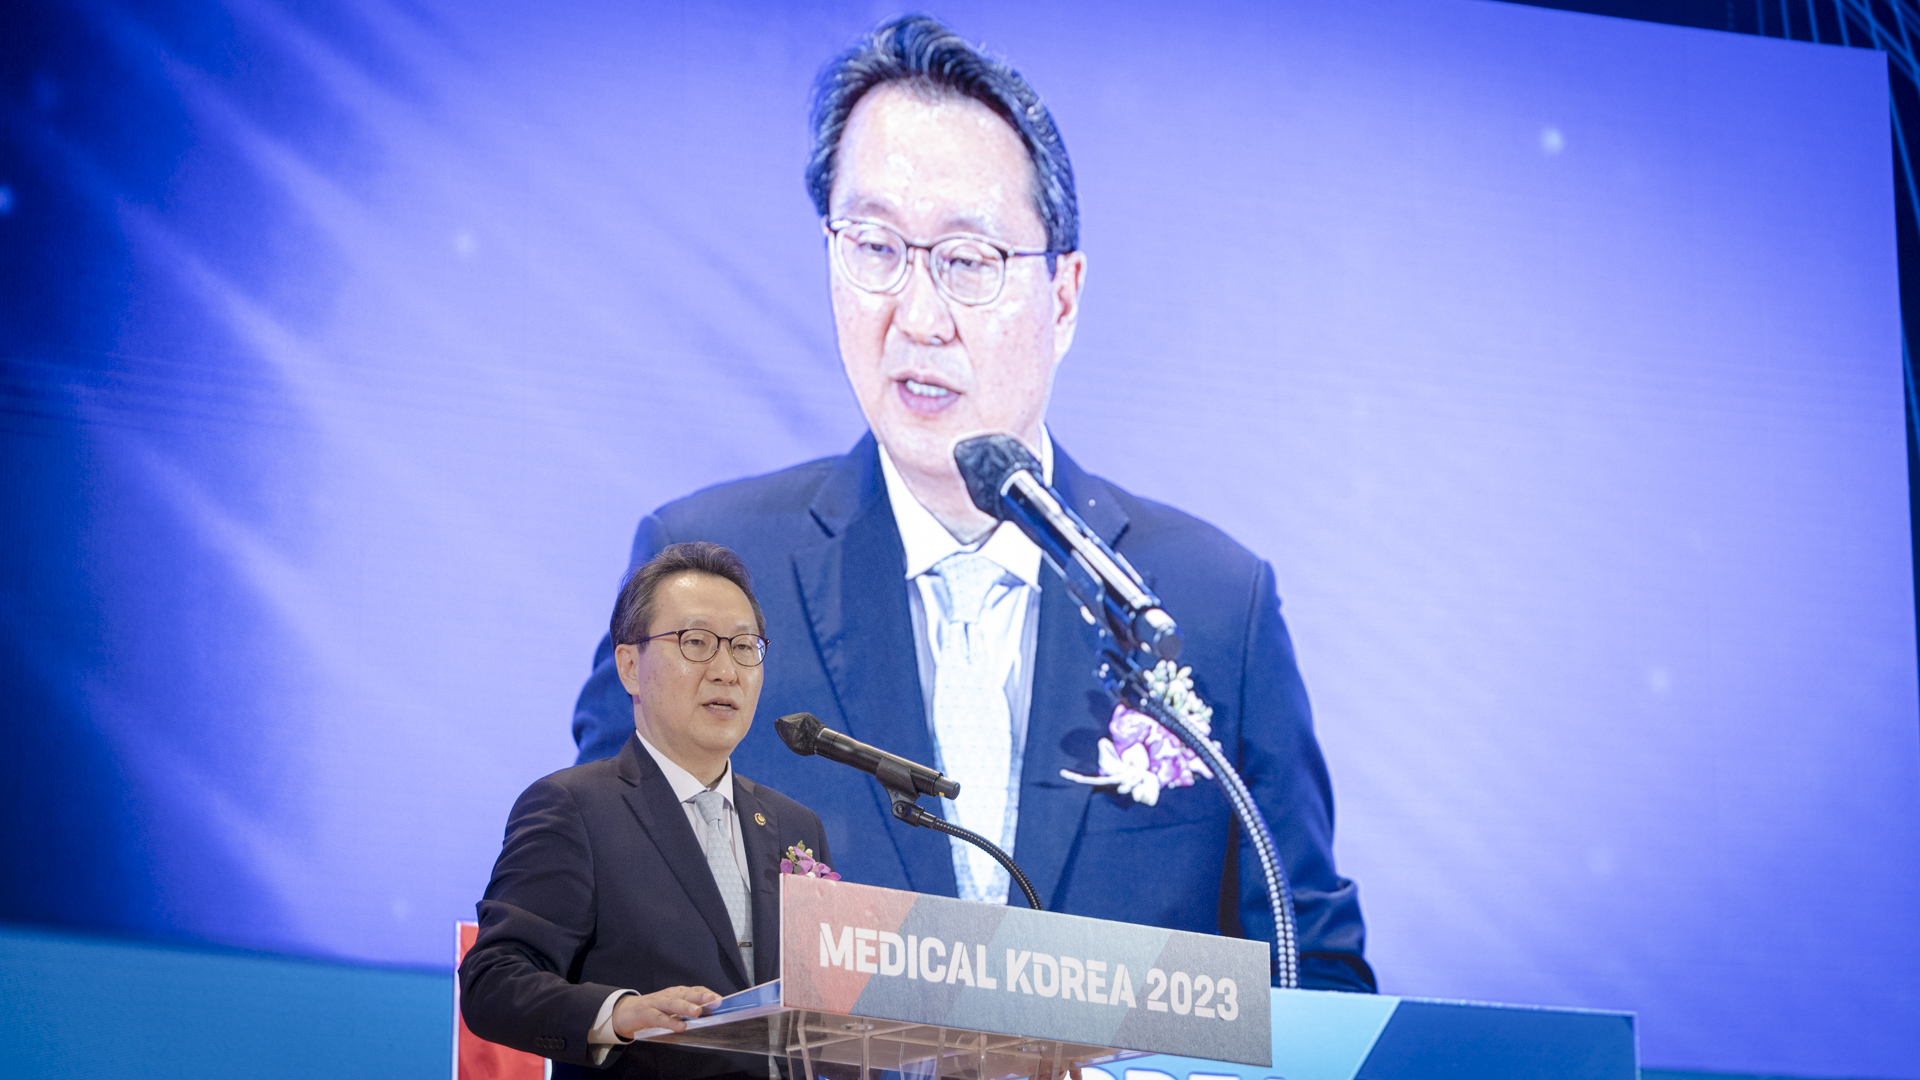 ‘더 나은 일상, 더 나은 미래를 위한 여정’ 「메디컬 코리아(Medical Korea) 2023」 사진16